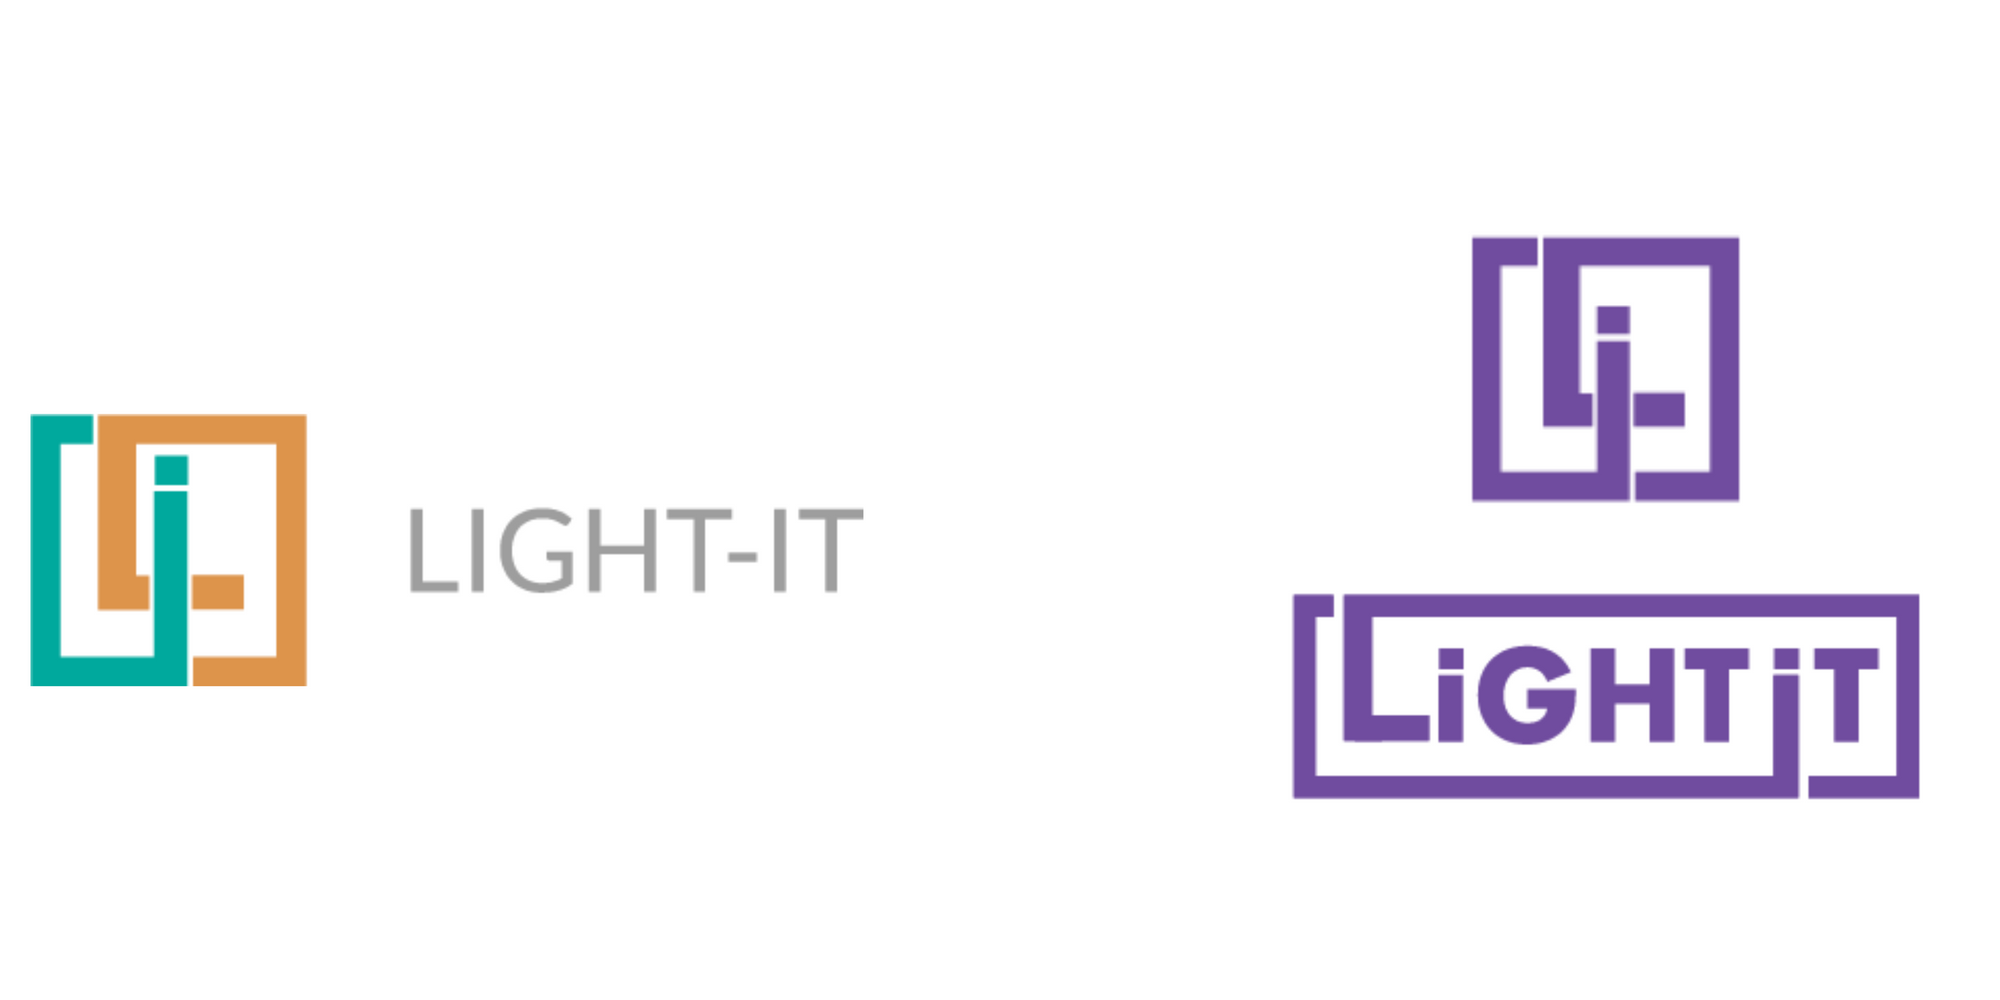 Light-it's logo evolution.